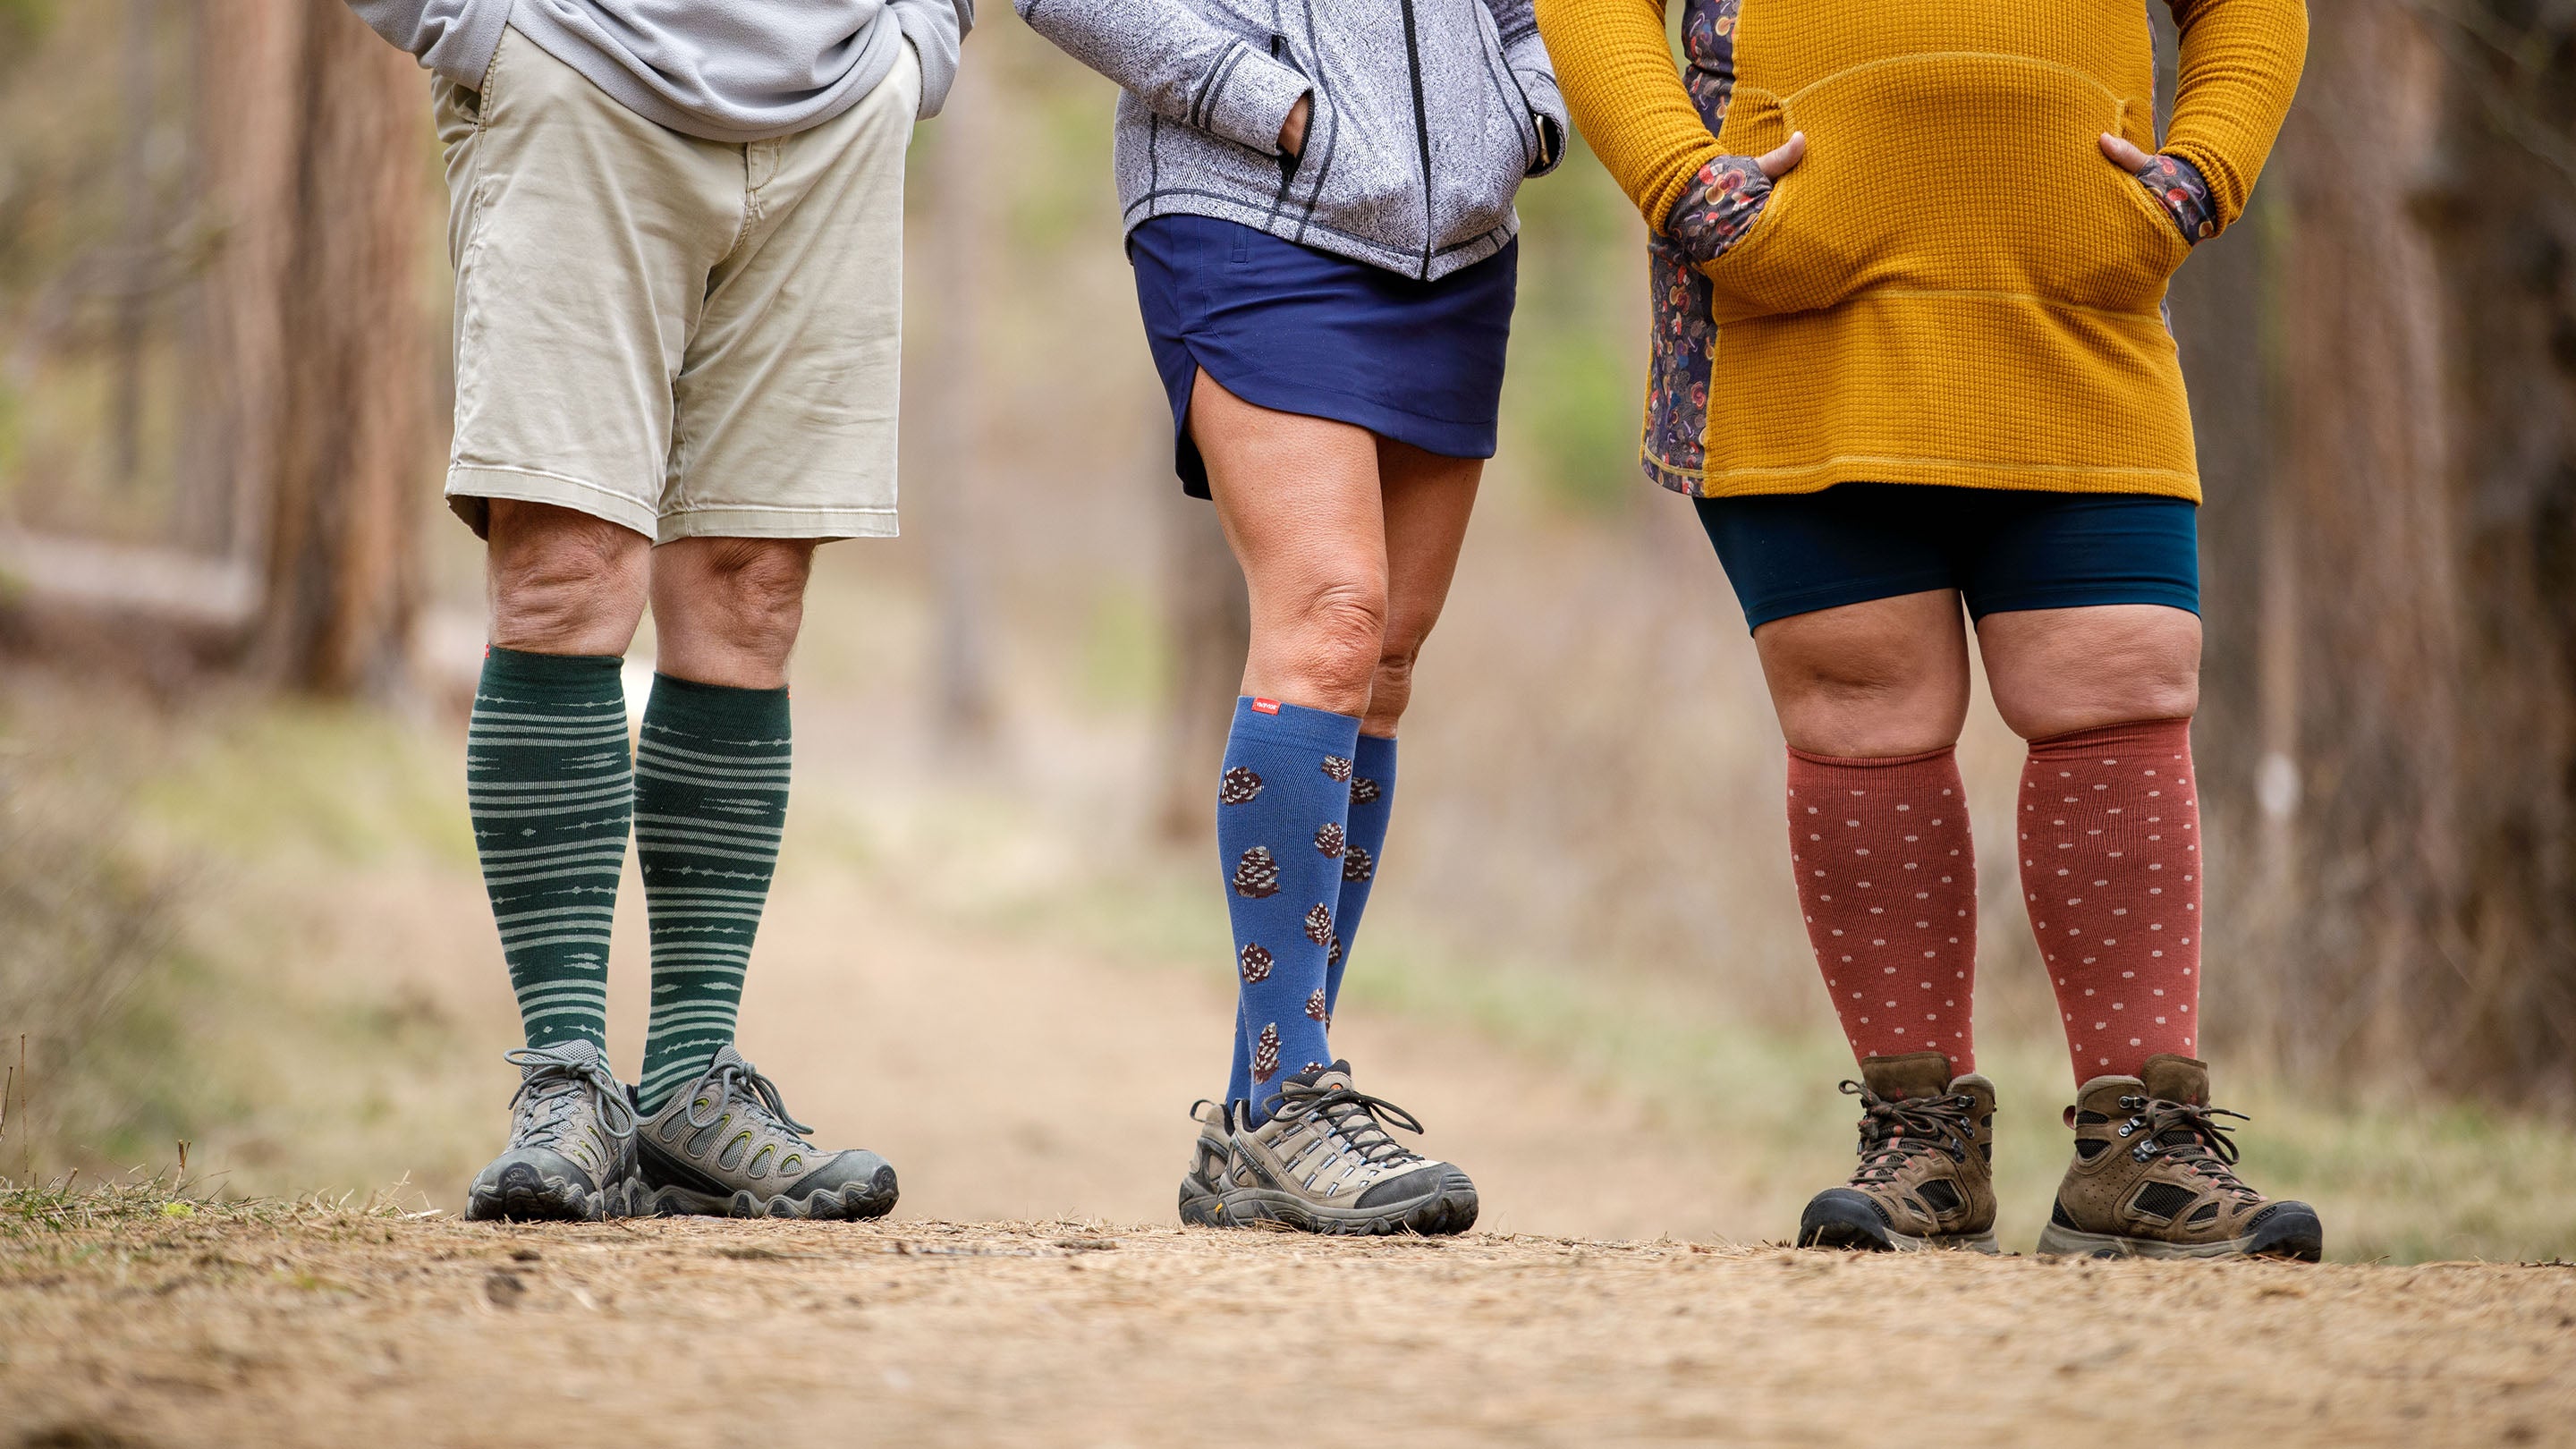 Should I wear compression socks for hiking?